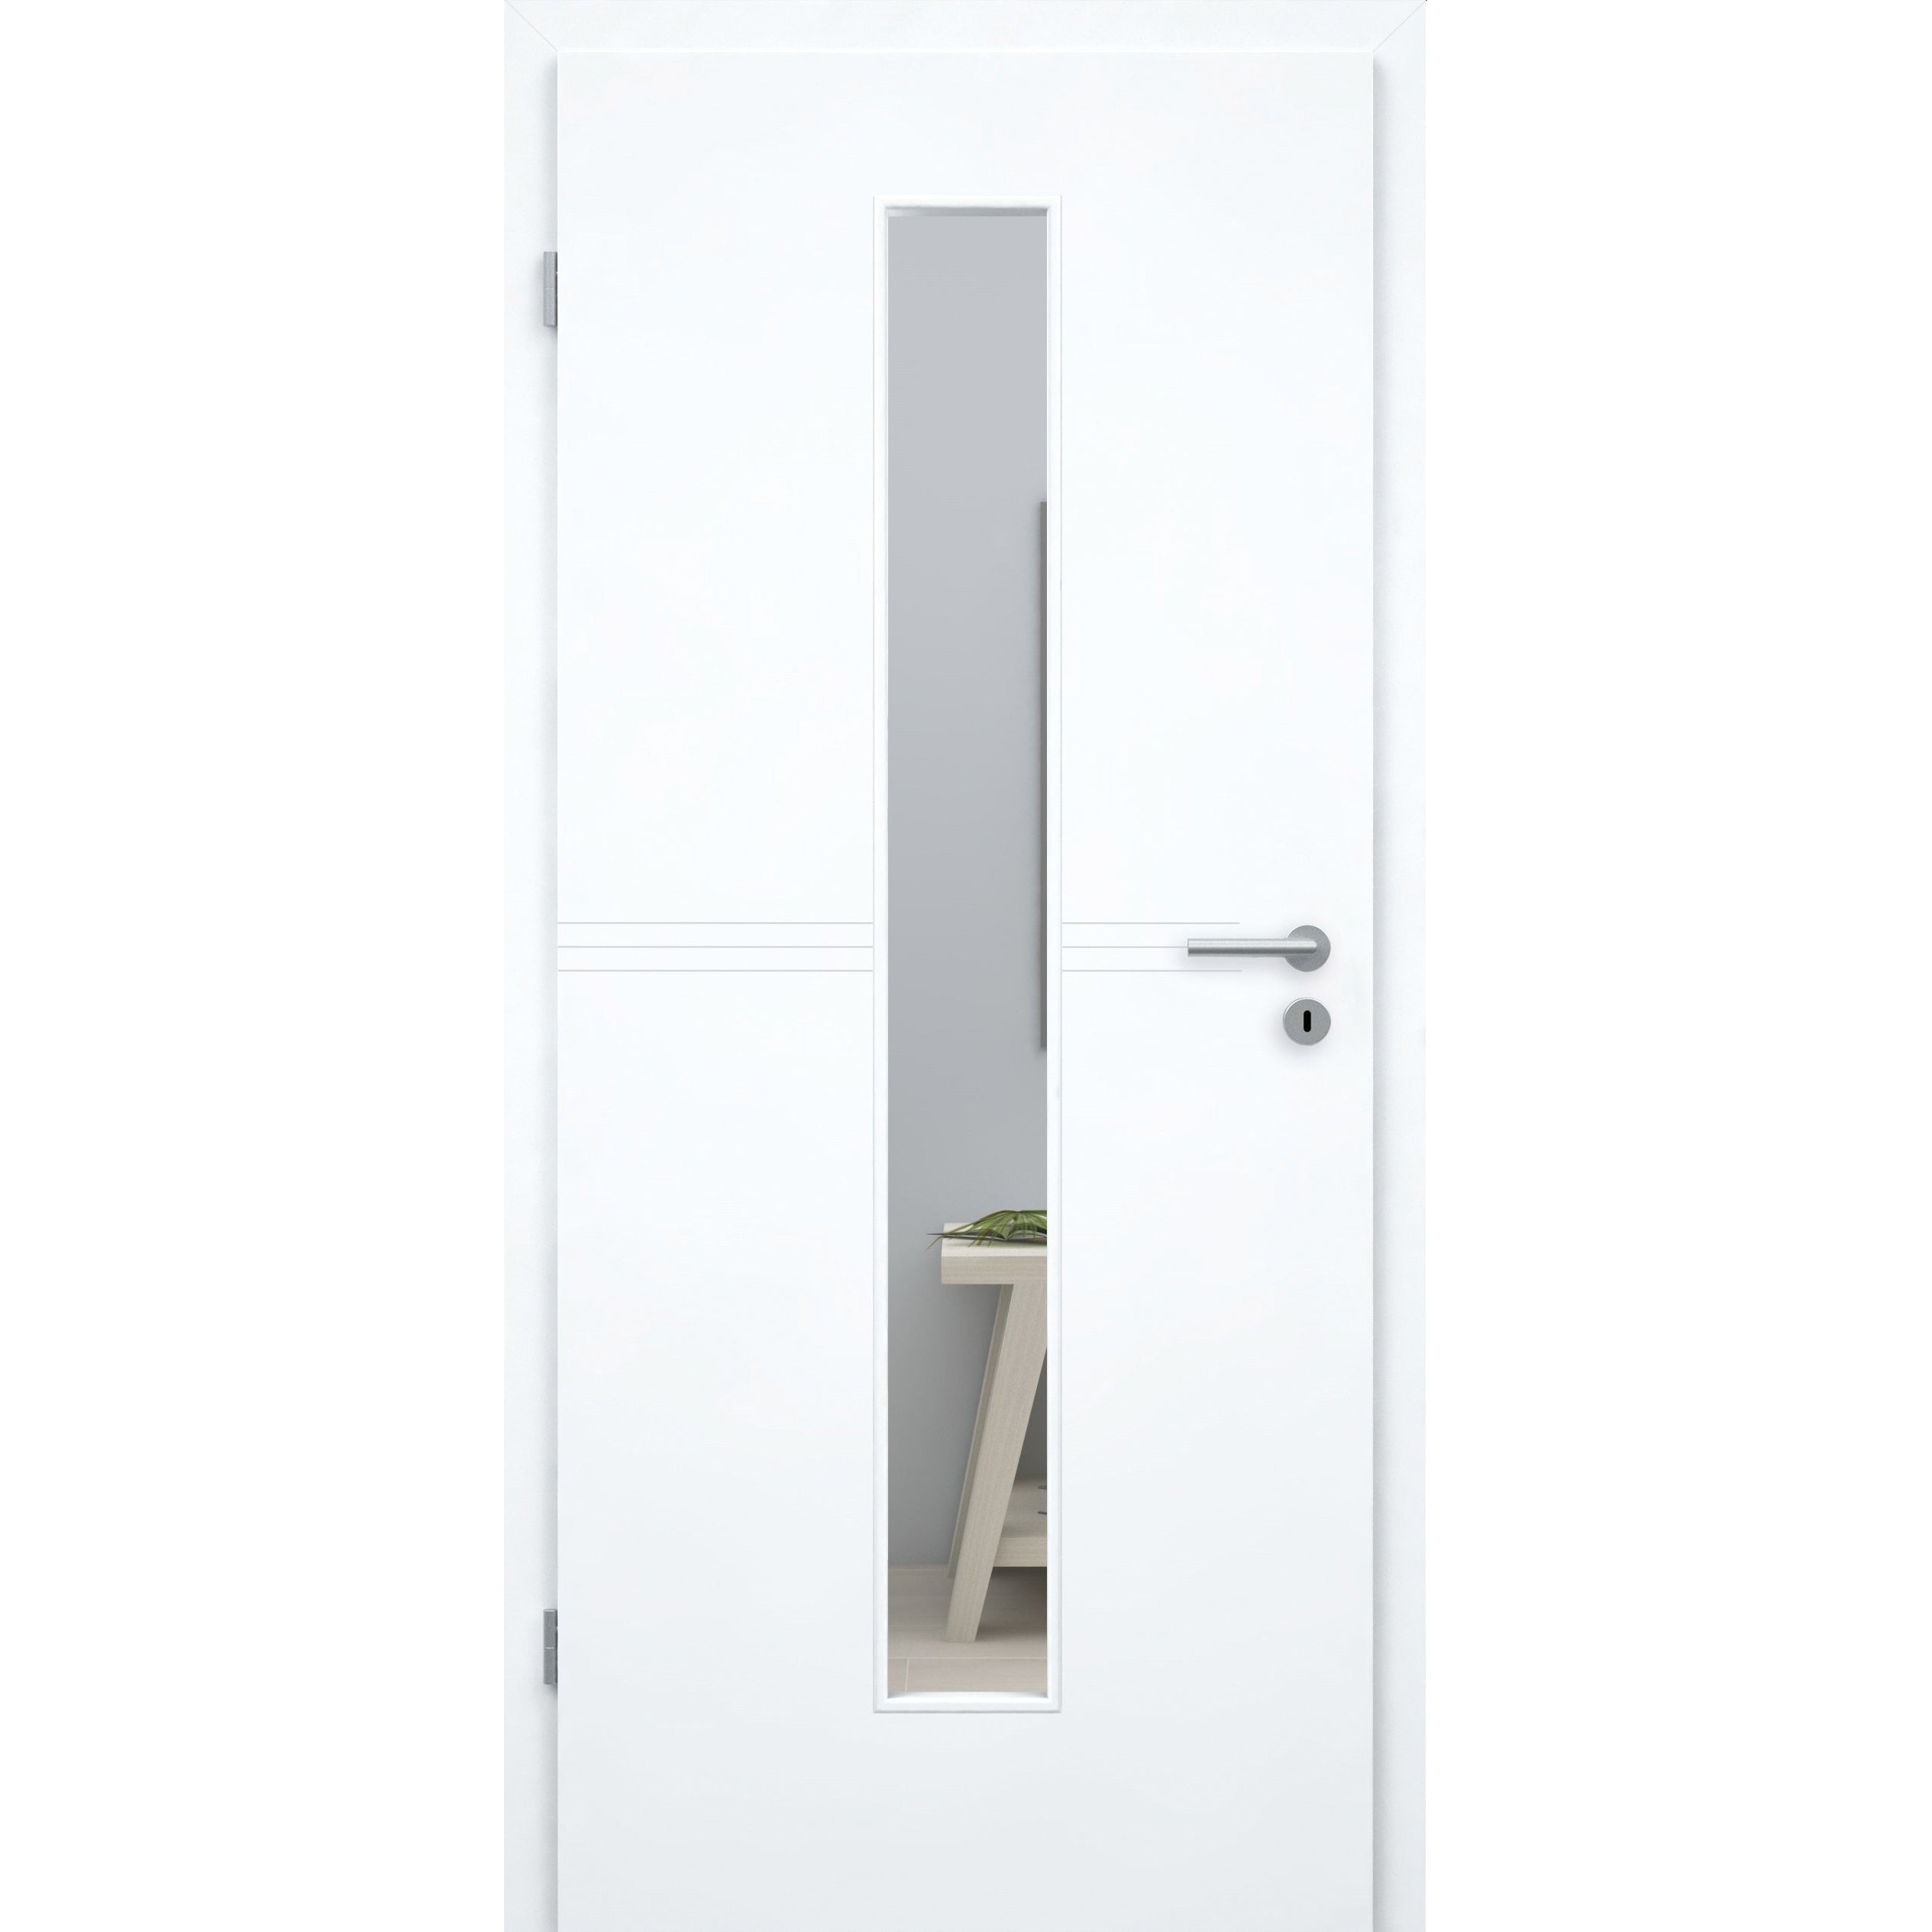 Zimmertür mit Zarge und Lichtausschnitt brillant-weiß 3 Rillen Designkante - Modell Designtür Q33LAM